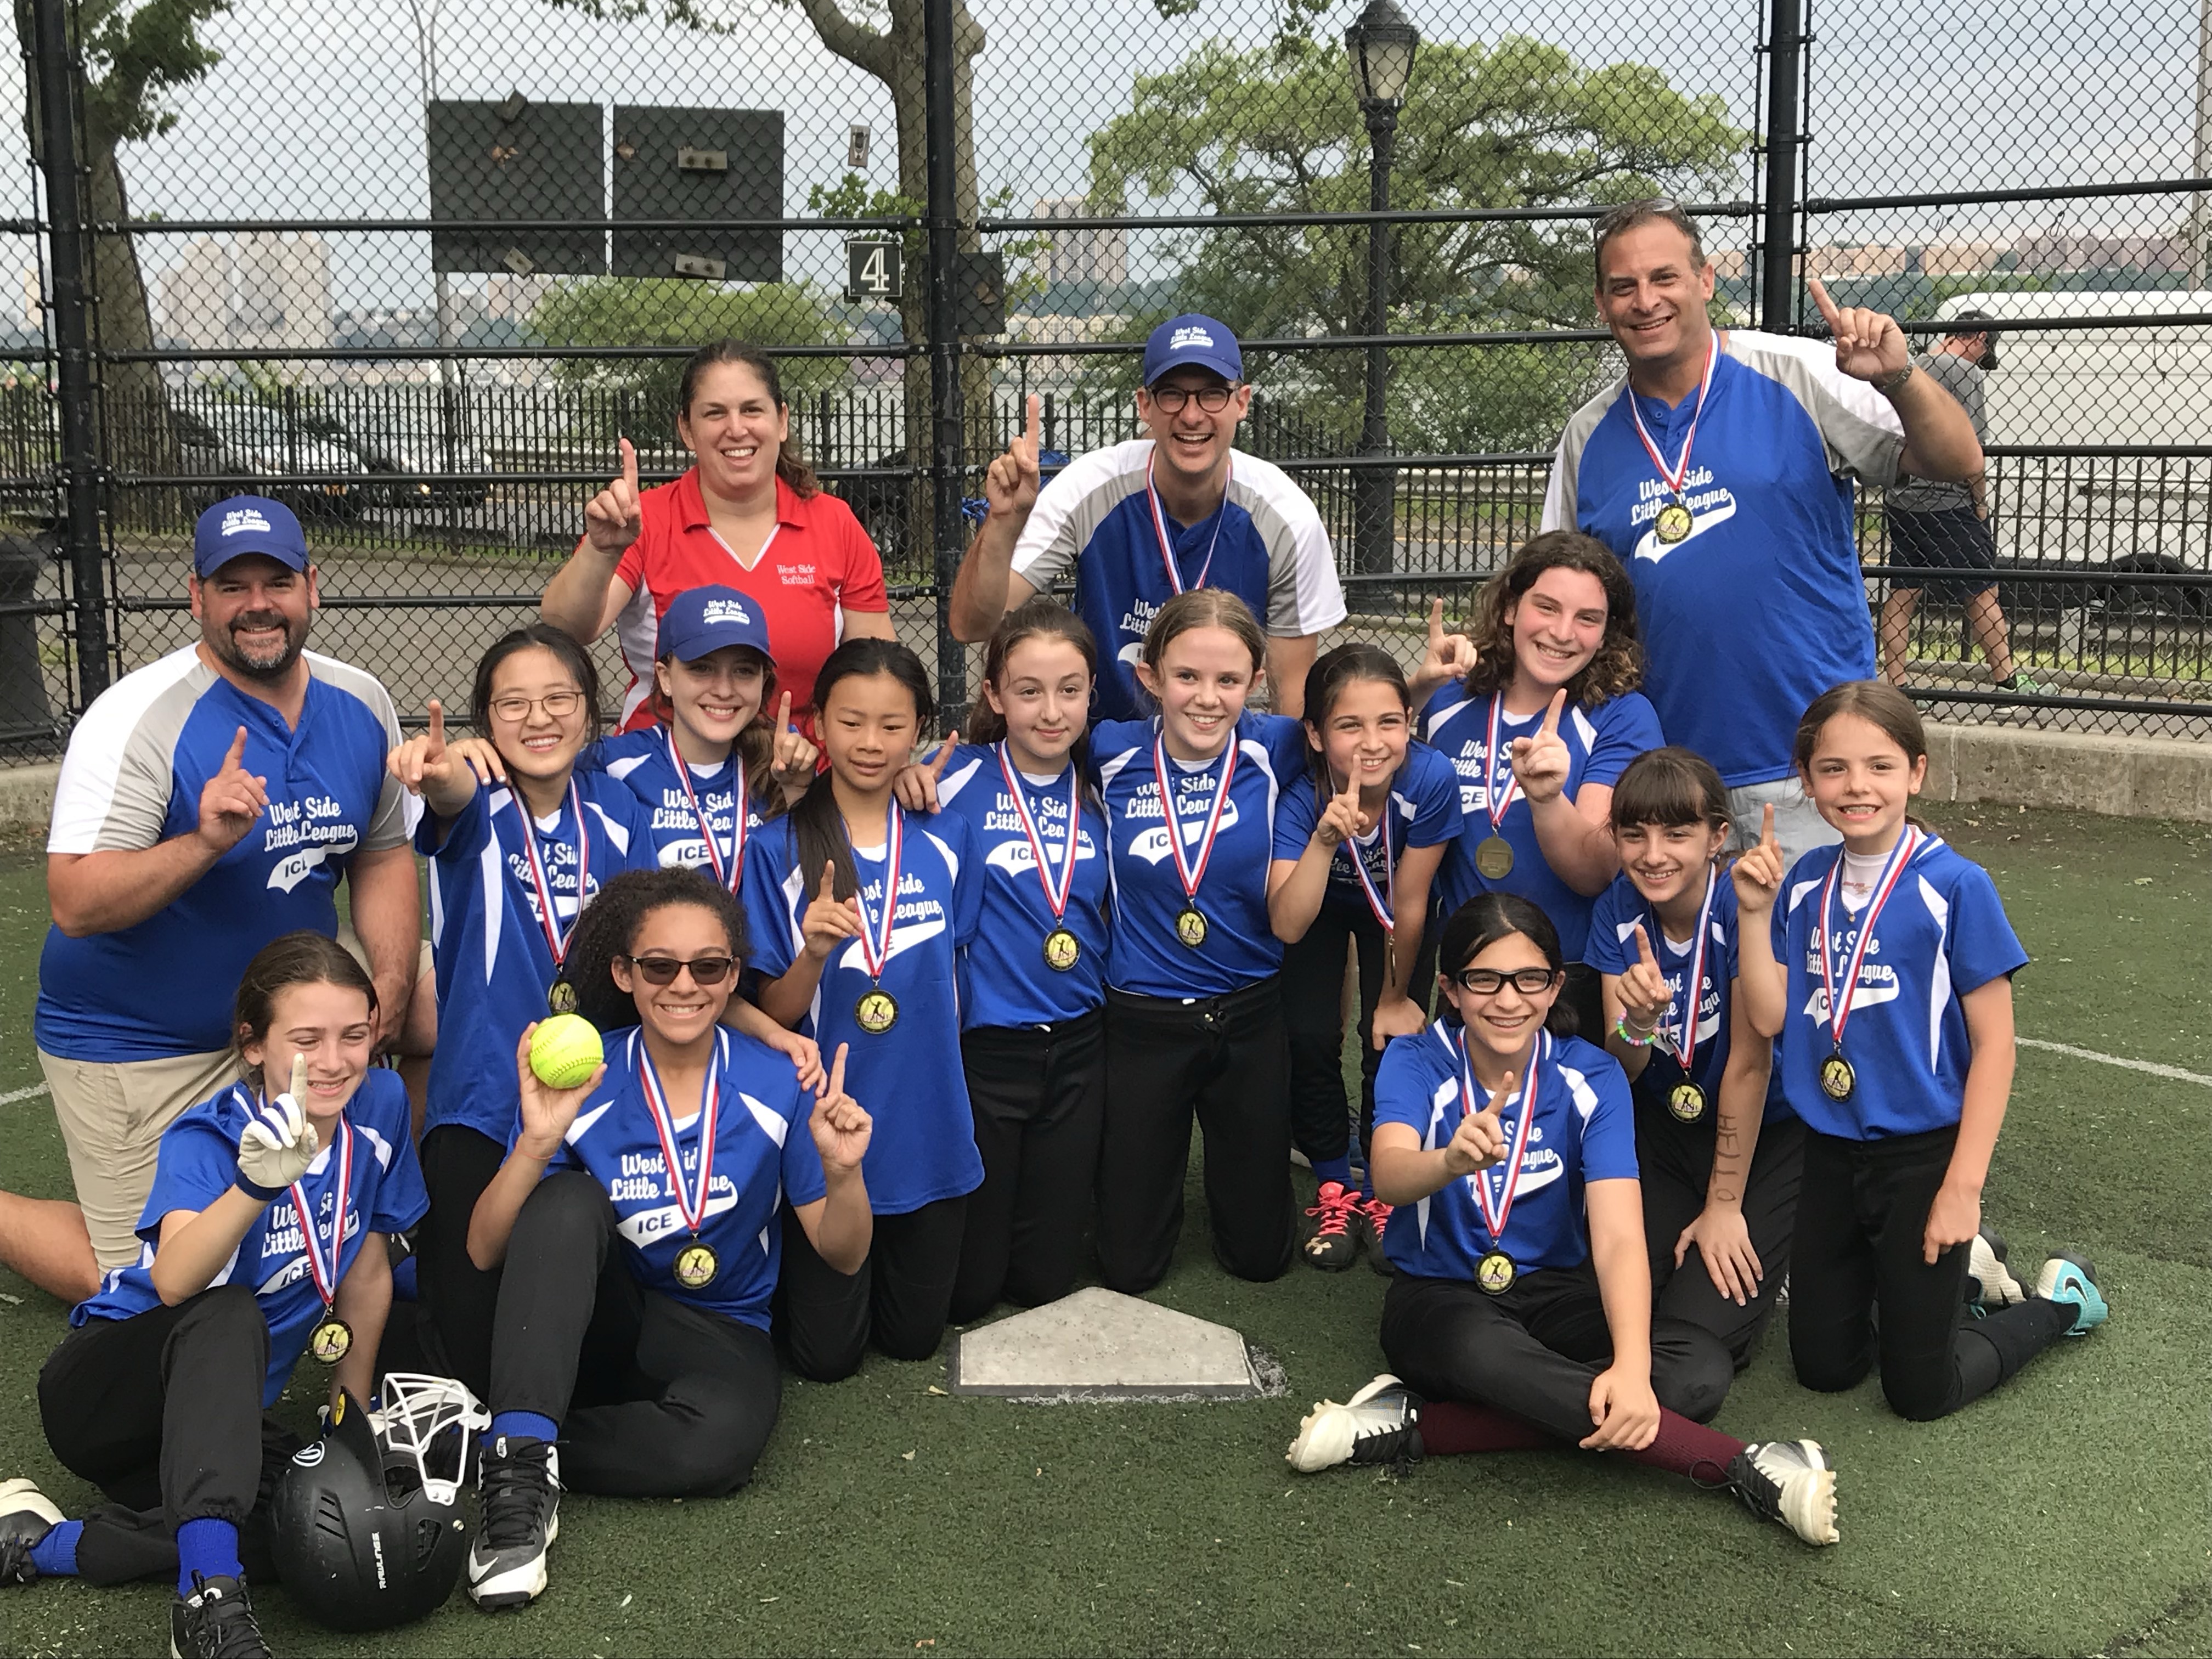 West Side Little League's 2019 Majors Girls Softball team